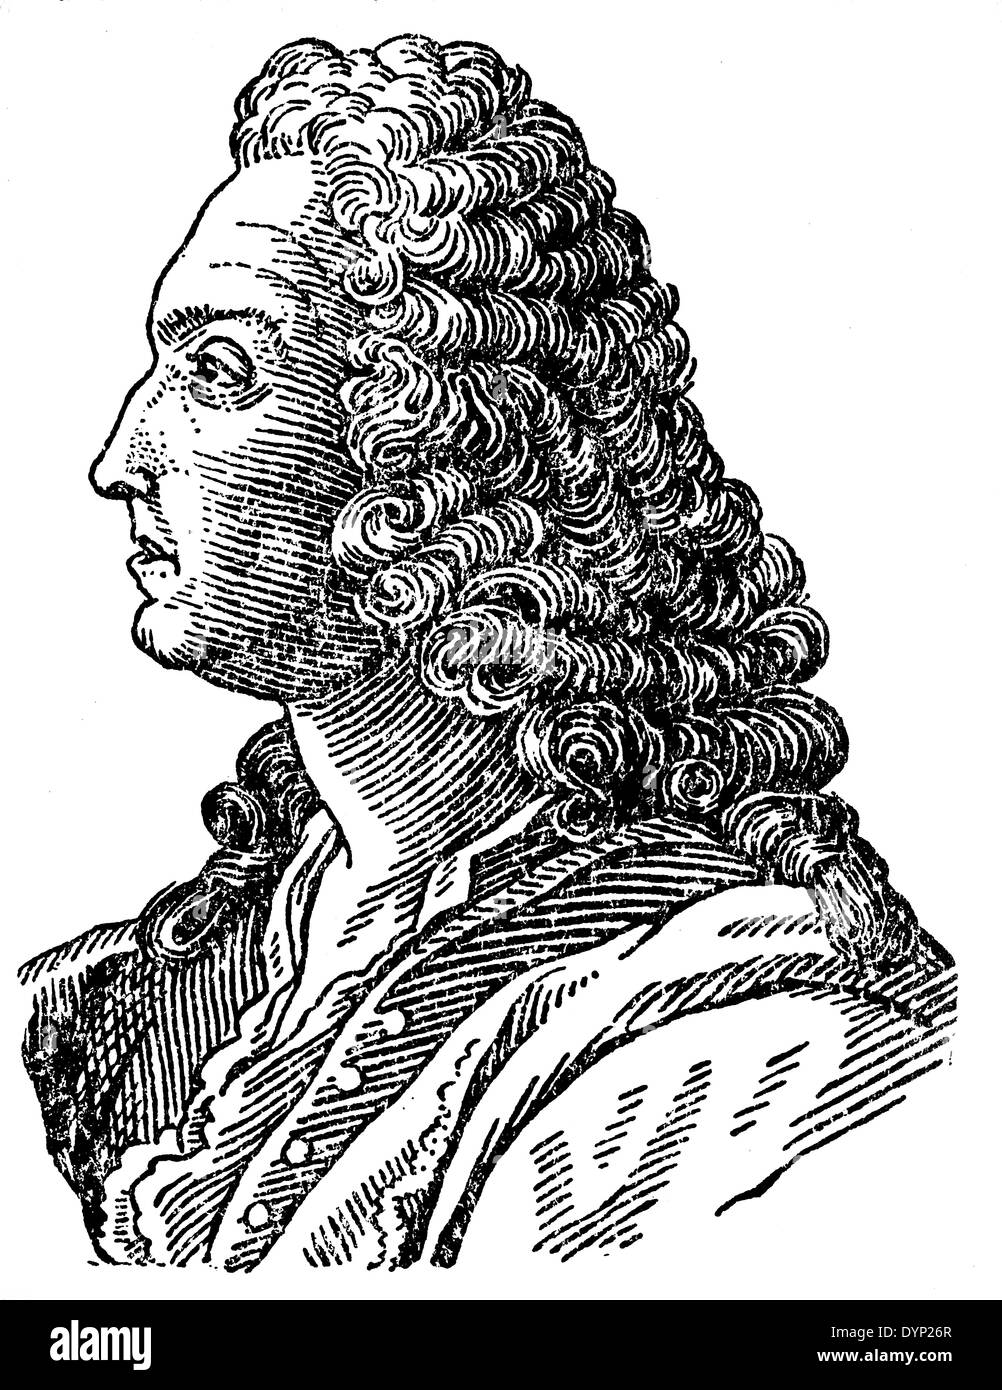 Jacob Bernoulli (1665-1705), mathématicien suisse, illustration de l'Encyclopédie Soviétique, 1927 Banque D'Images